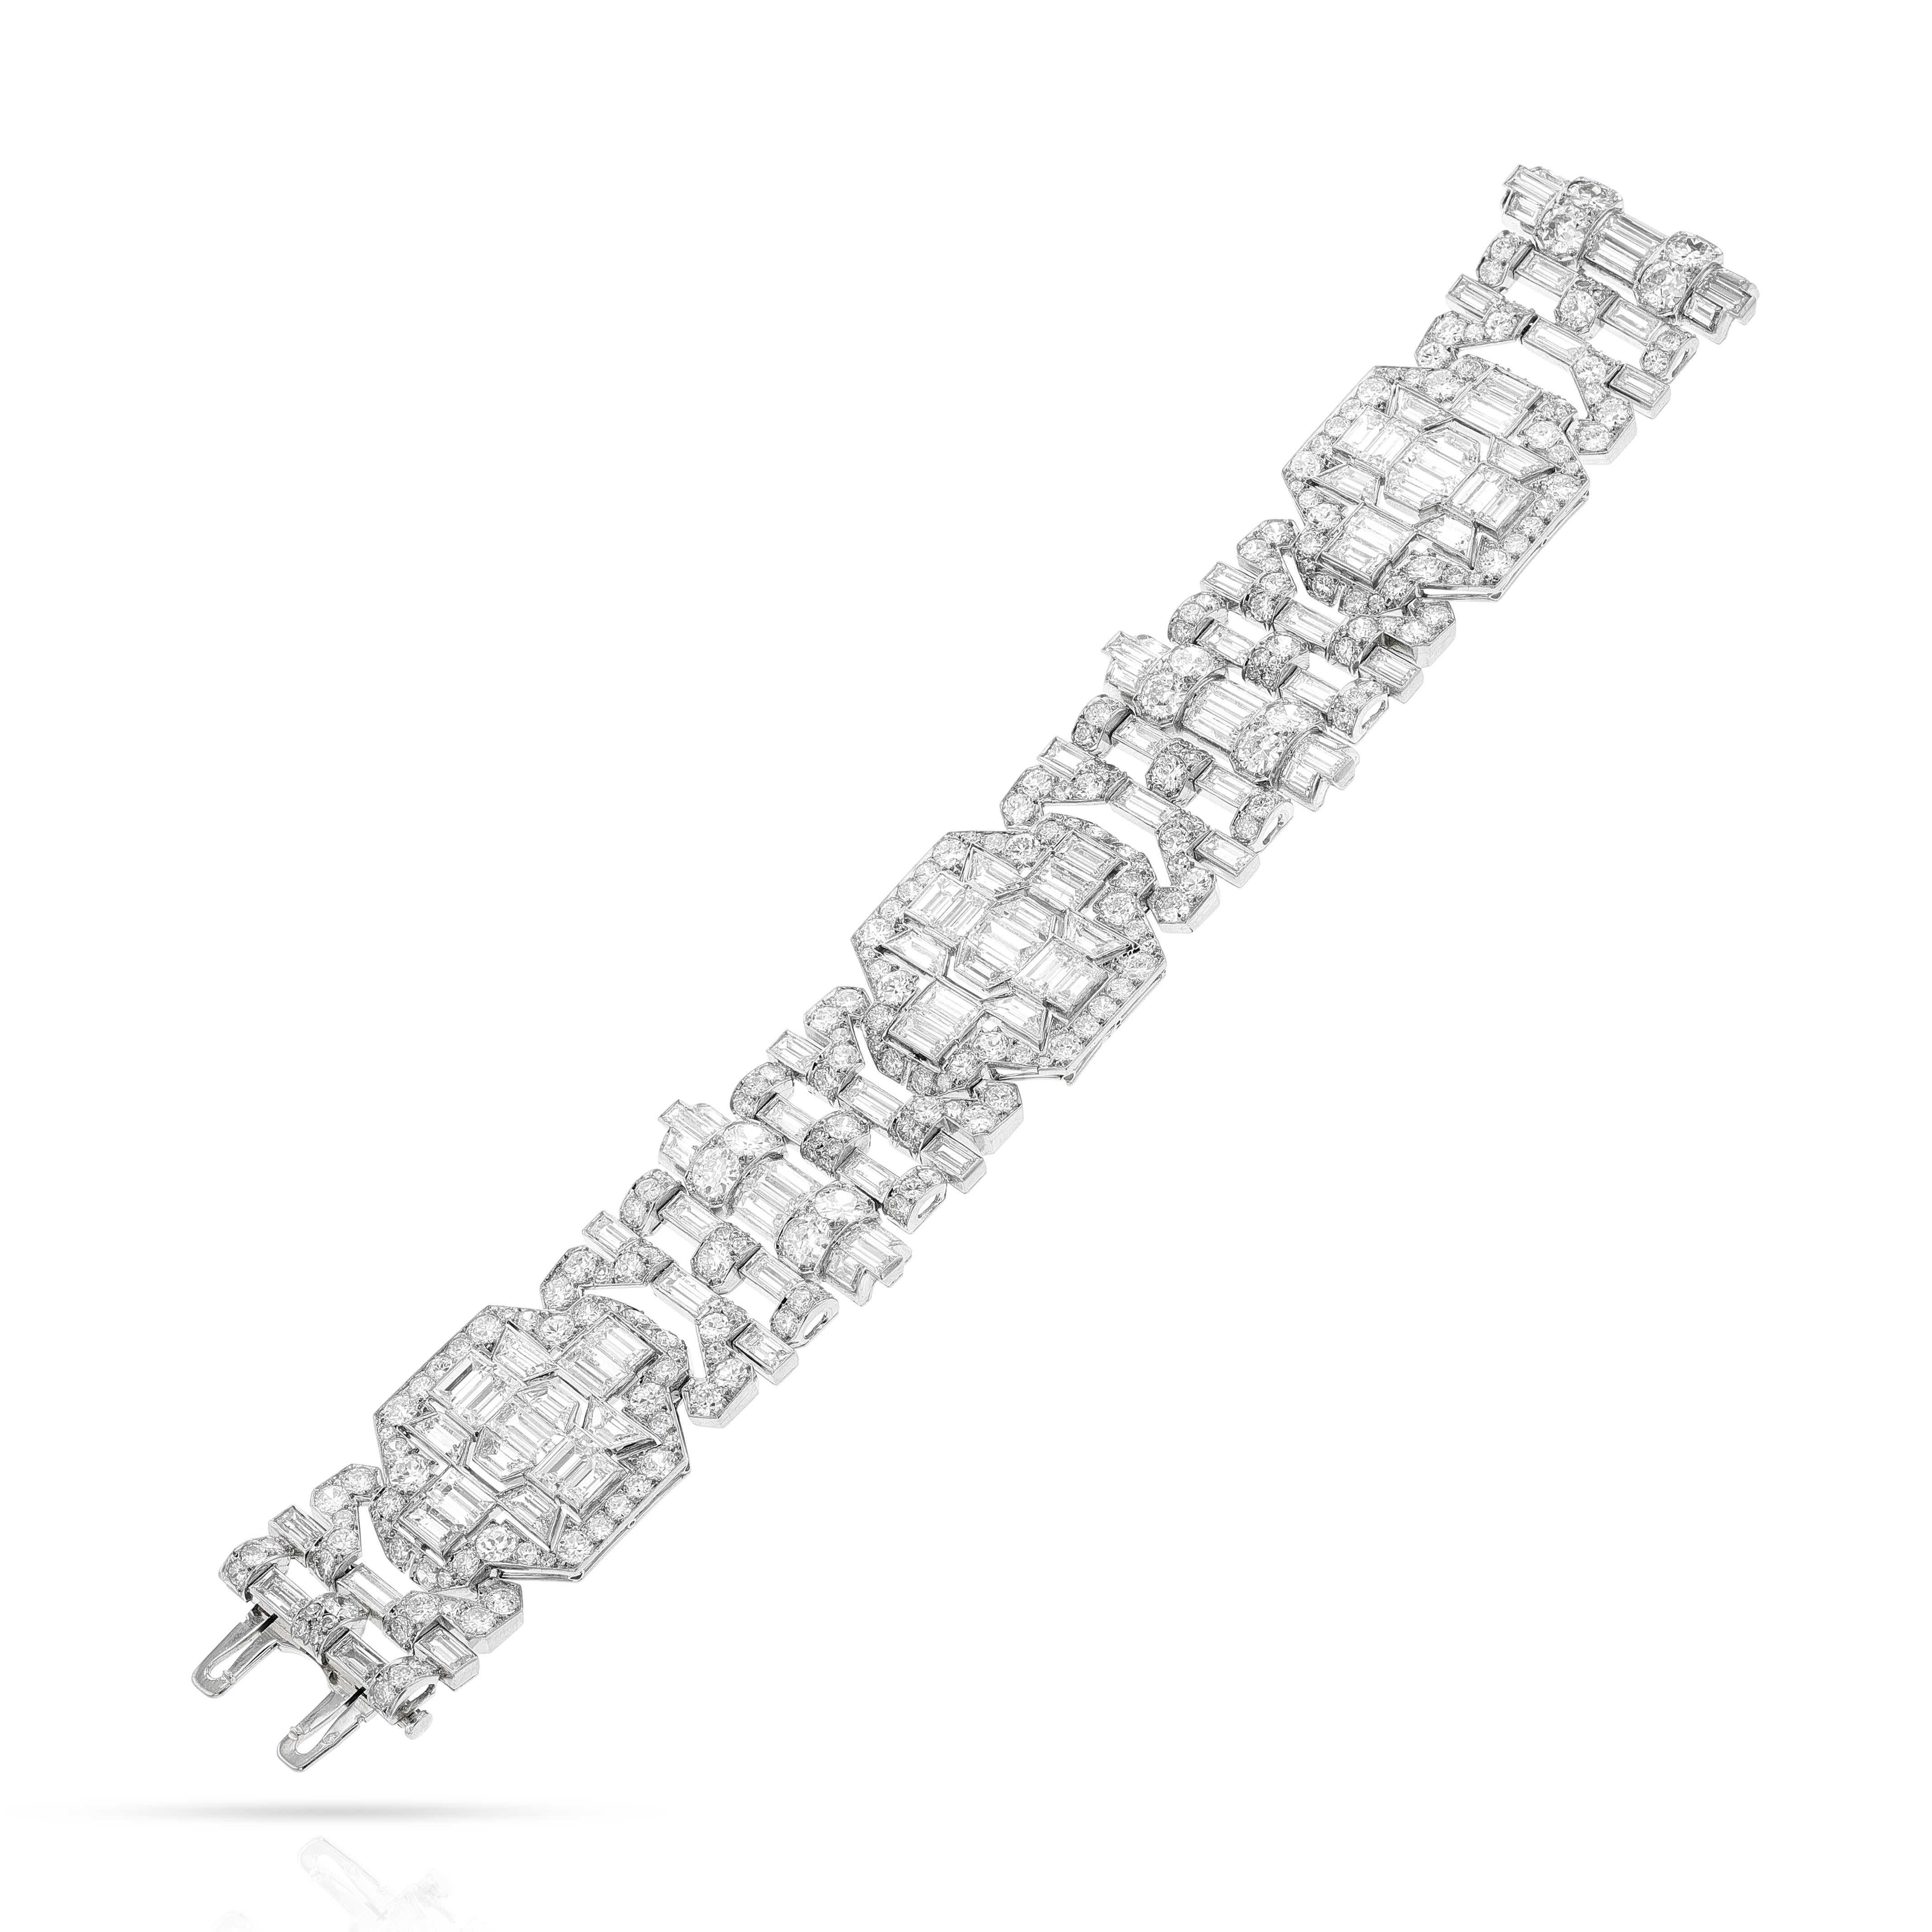 Mauboussin Paris Art Deco Diamond and Platinum Bracelet. Les diamants pèsent environ 40-50 carats. La longueur est de 7 pouces. Le poids total est de 68,60 grammes. La largeur varie de 0,80 pouce à 1 pouce sur l'ensemble du bracelet.